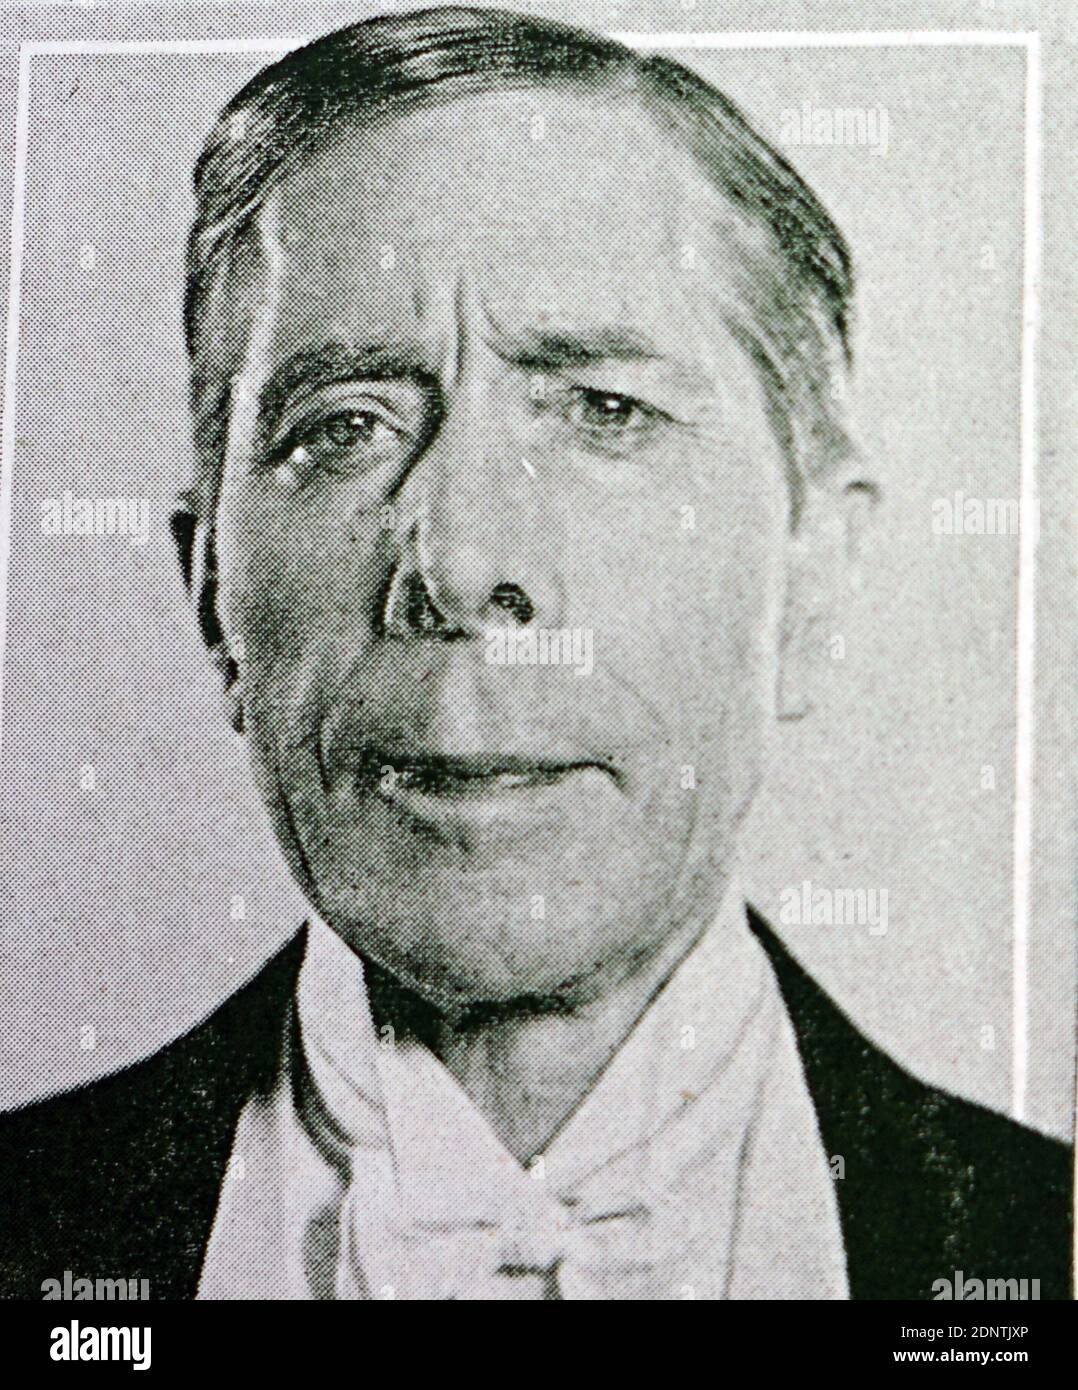 Fotografia di George Arliss (1868-1946) un attore, autore, drammaturgo e regista inglese. Foto Stock